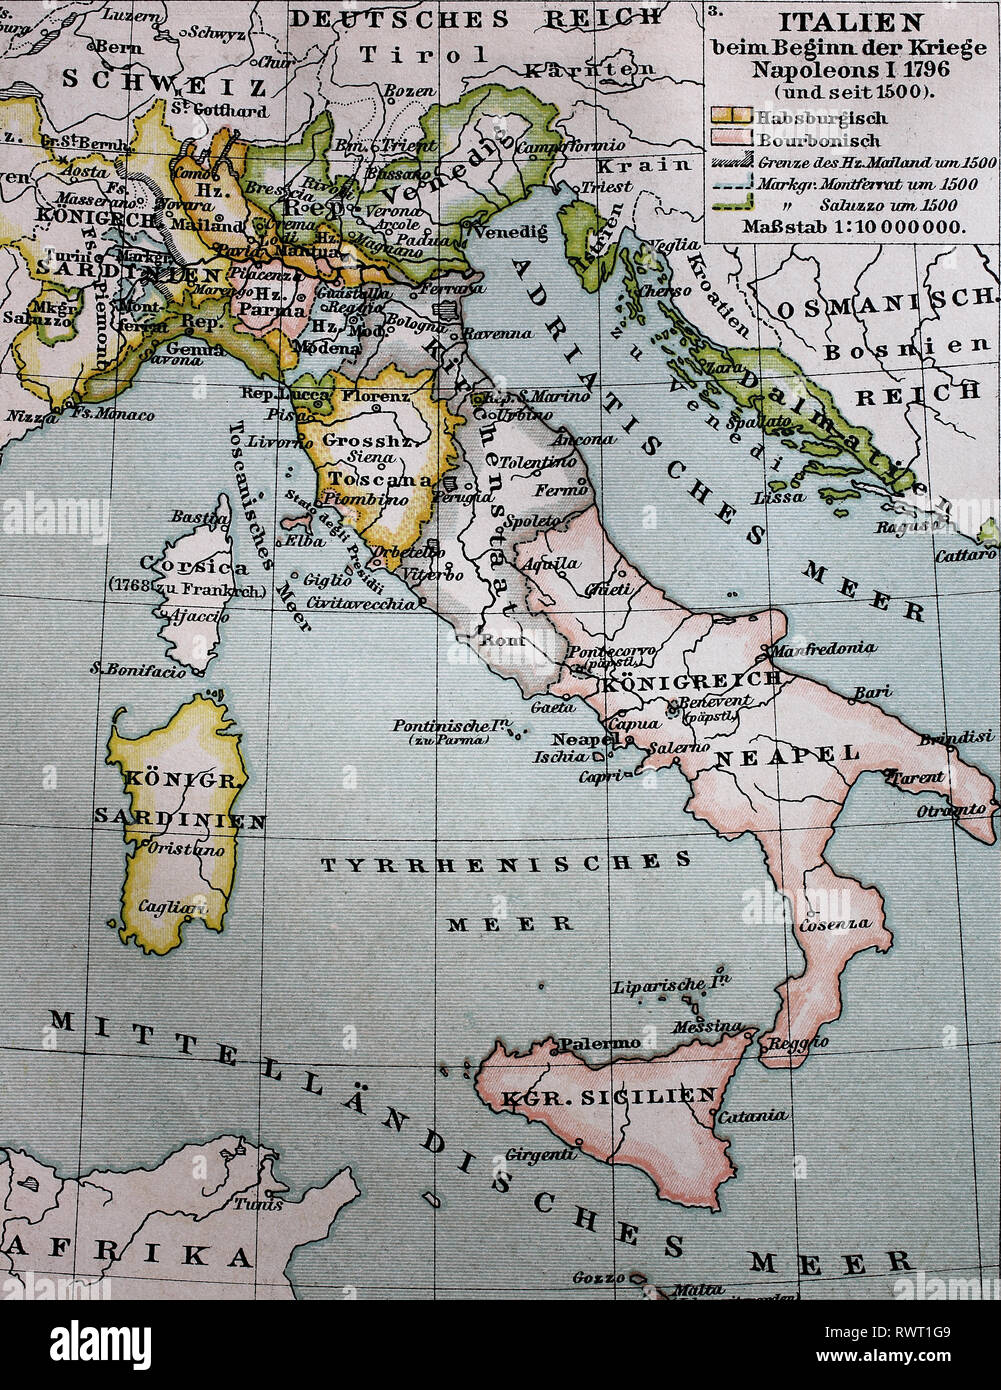 Landkarte von Italien von 1500 bis bei der Kriege Napoleon I, 1796 / Karte von Italien von 1500 bis zum Beginn der Napoleonischen Kriege 1796 Stockfoto